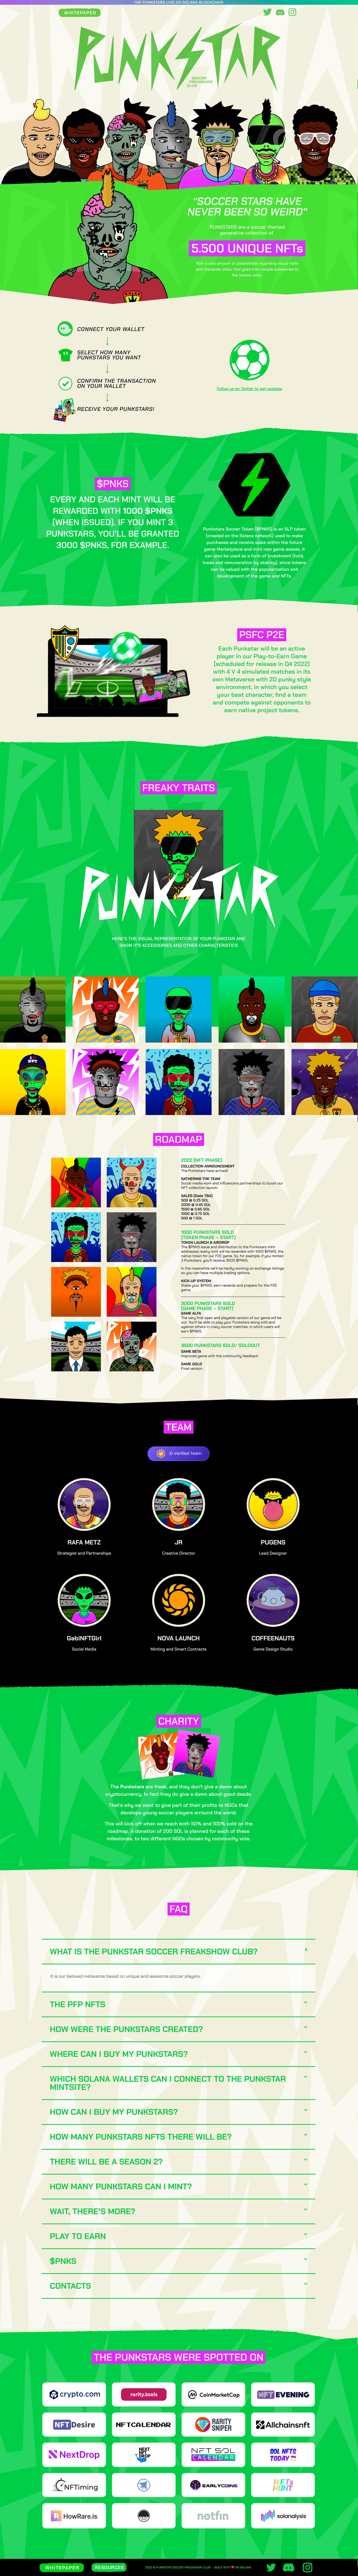 Punkstars Website Screenshot